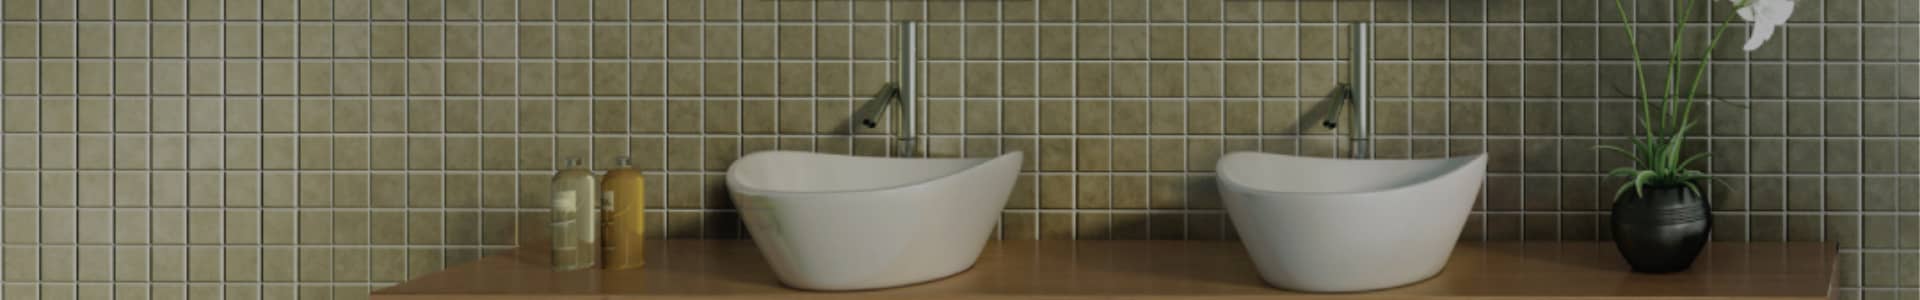 Table Top Wash Basins in Bathroom